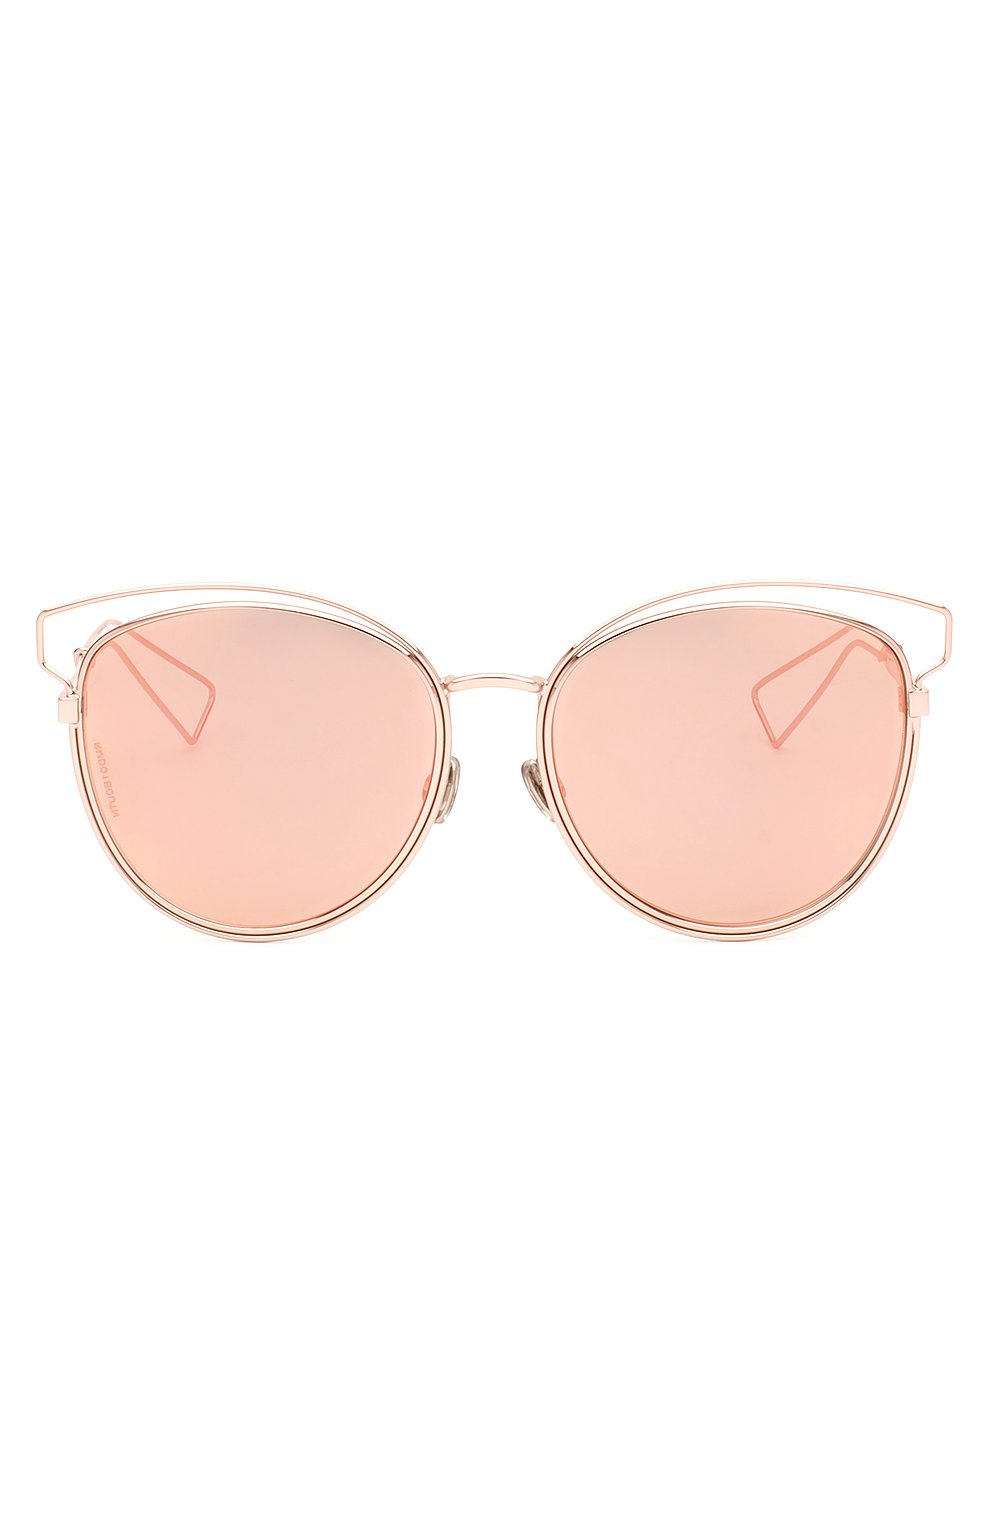 Женские солнцезащитные очки DIOR розового цвета, арт. DI0RSIDERAL2 JA0 | Фото 1 (Тип очков: С/з)